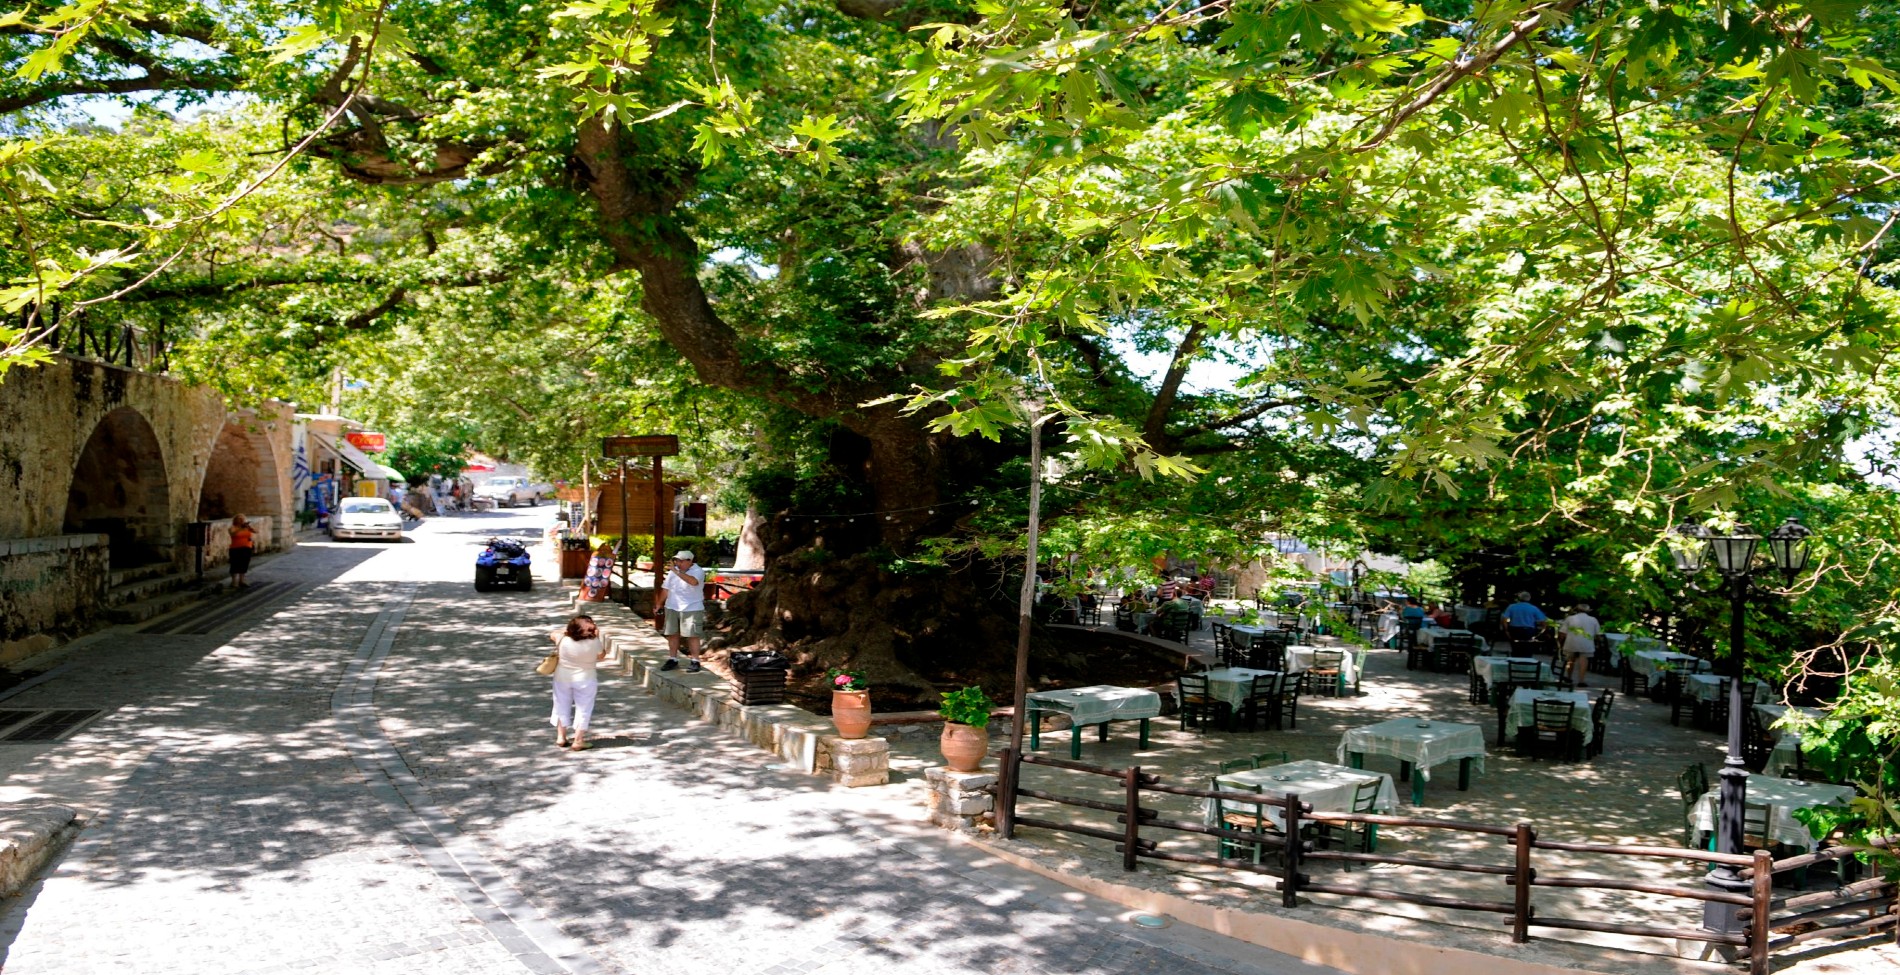 Κράσι: Το χωριό της Κρήτης με ένα από τα πέντε μεγαλύτερα δέντρα στην Ευρώπη (βίντεο)